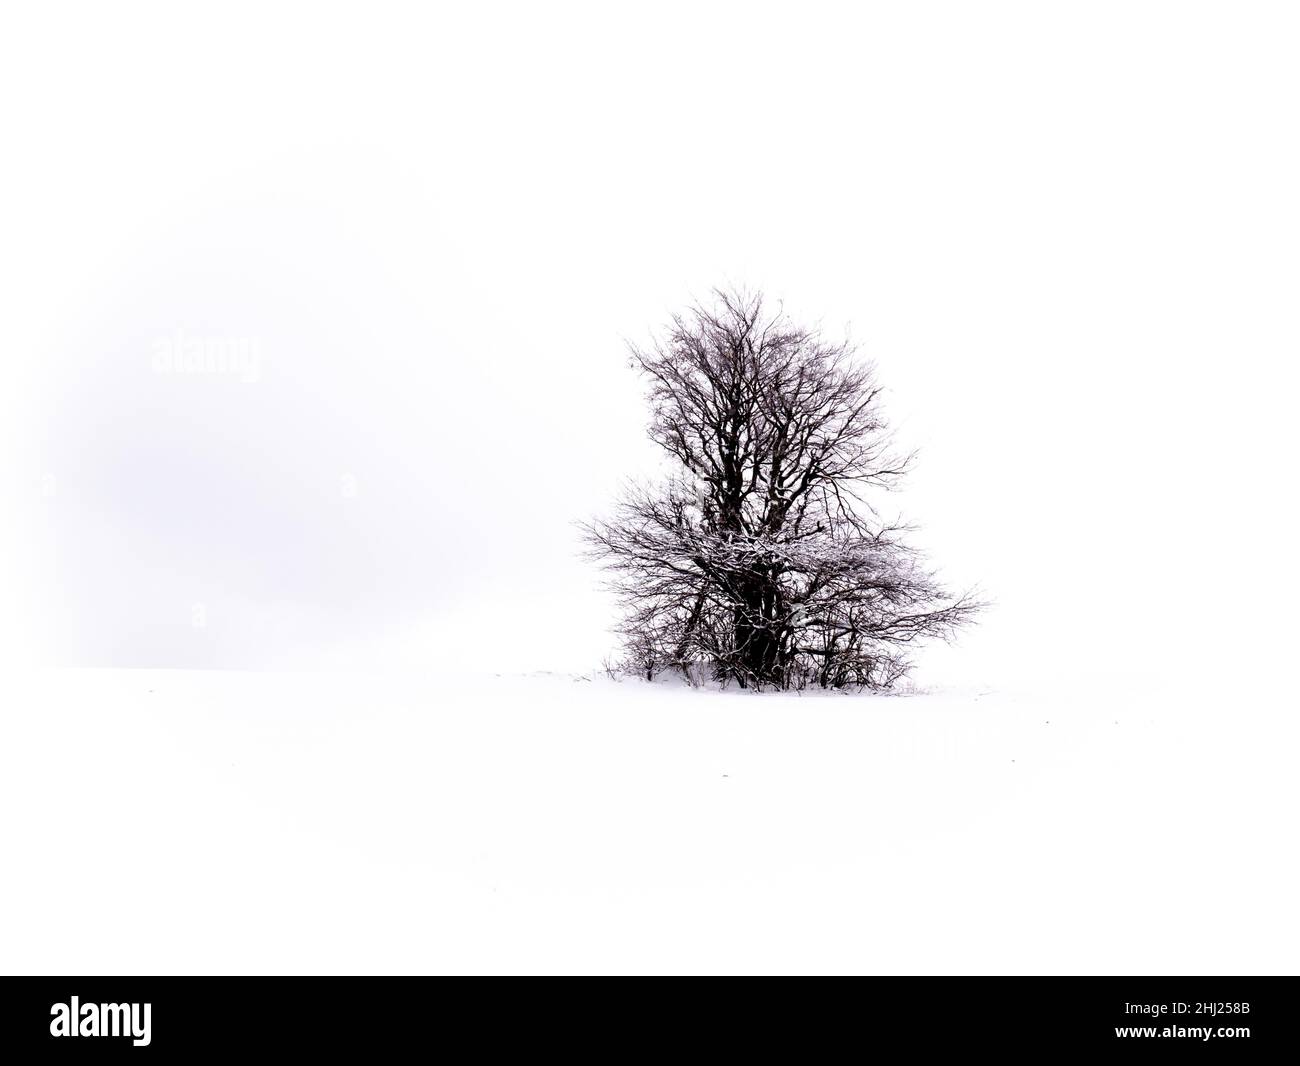 Arbre solitaire isolé sur fond blanc enneigé et nuageux entouré d'un paysage sombre mystérieux.Paysage enneigé d'hiver, région de Vysocina, République Tchèque Banque D'Images